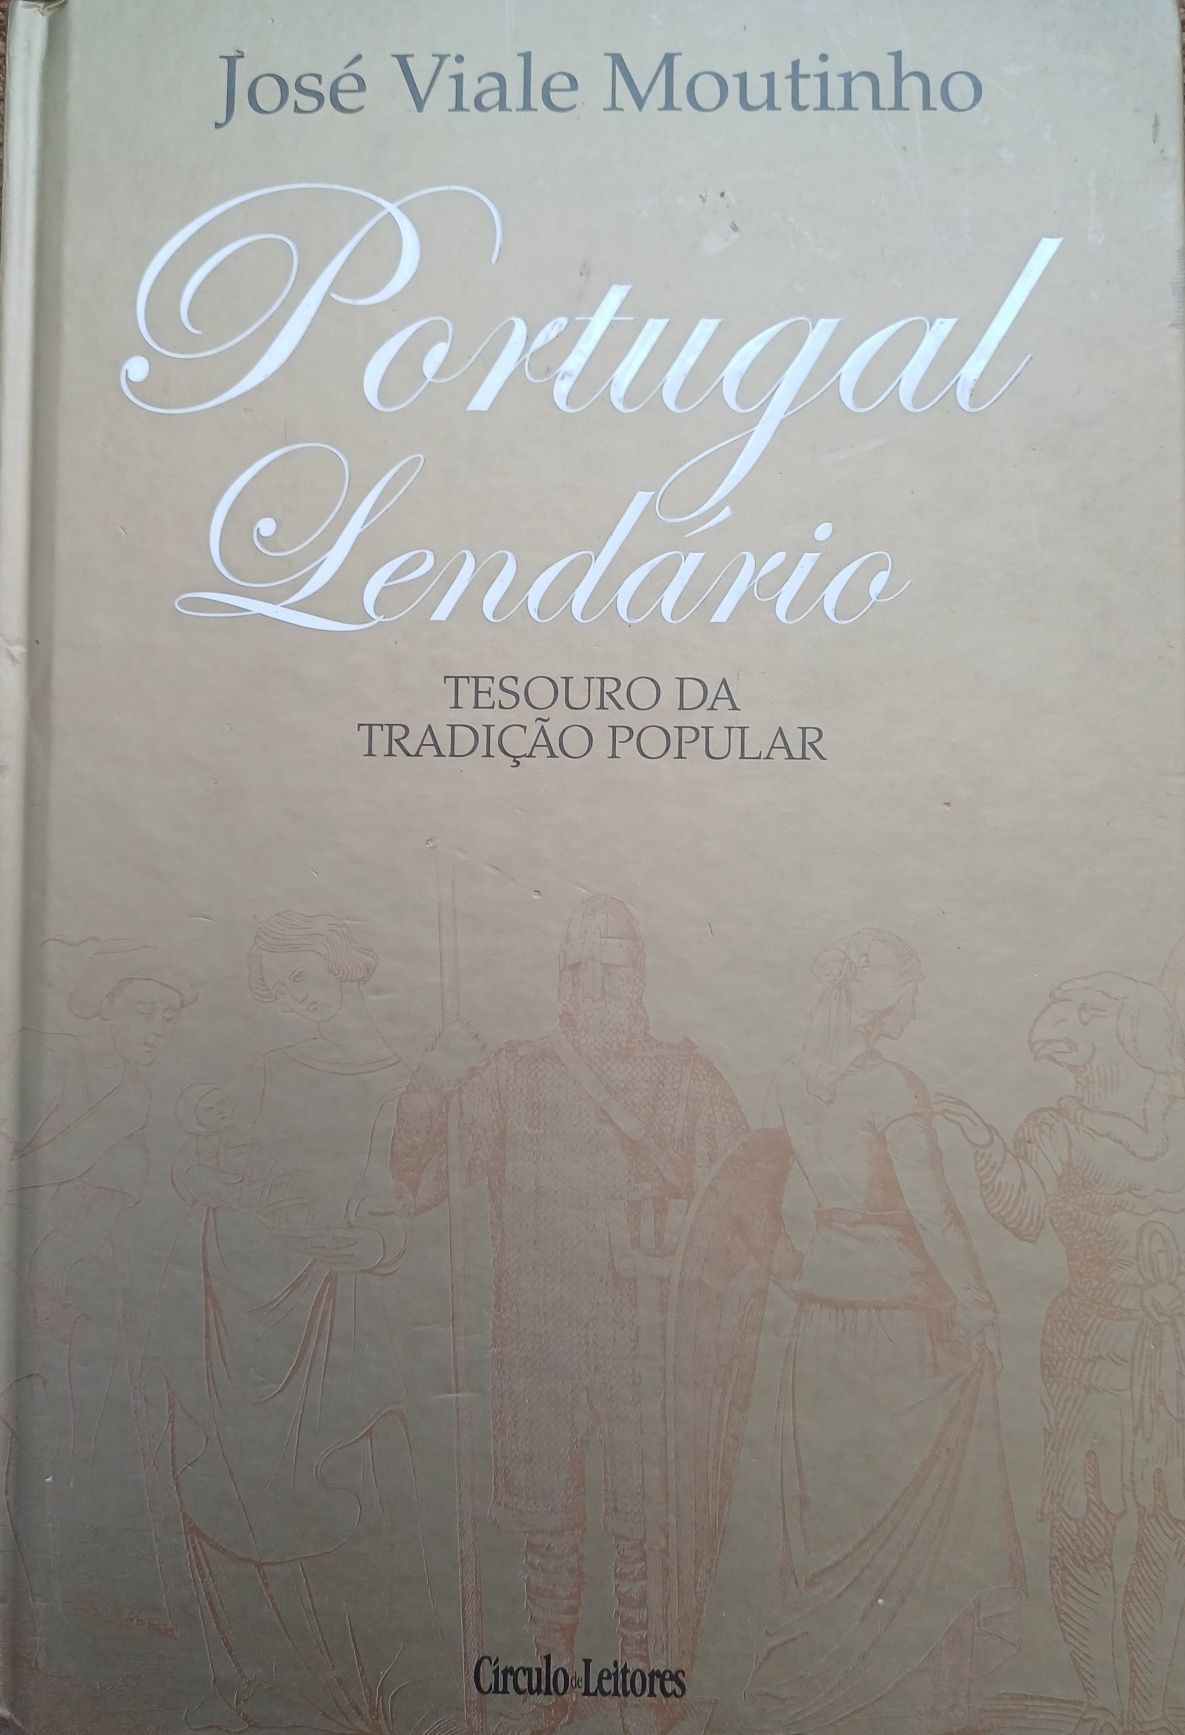 Portugal Lendário